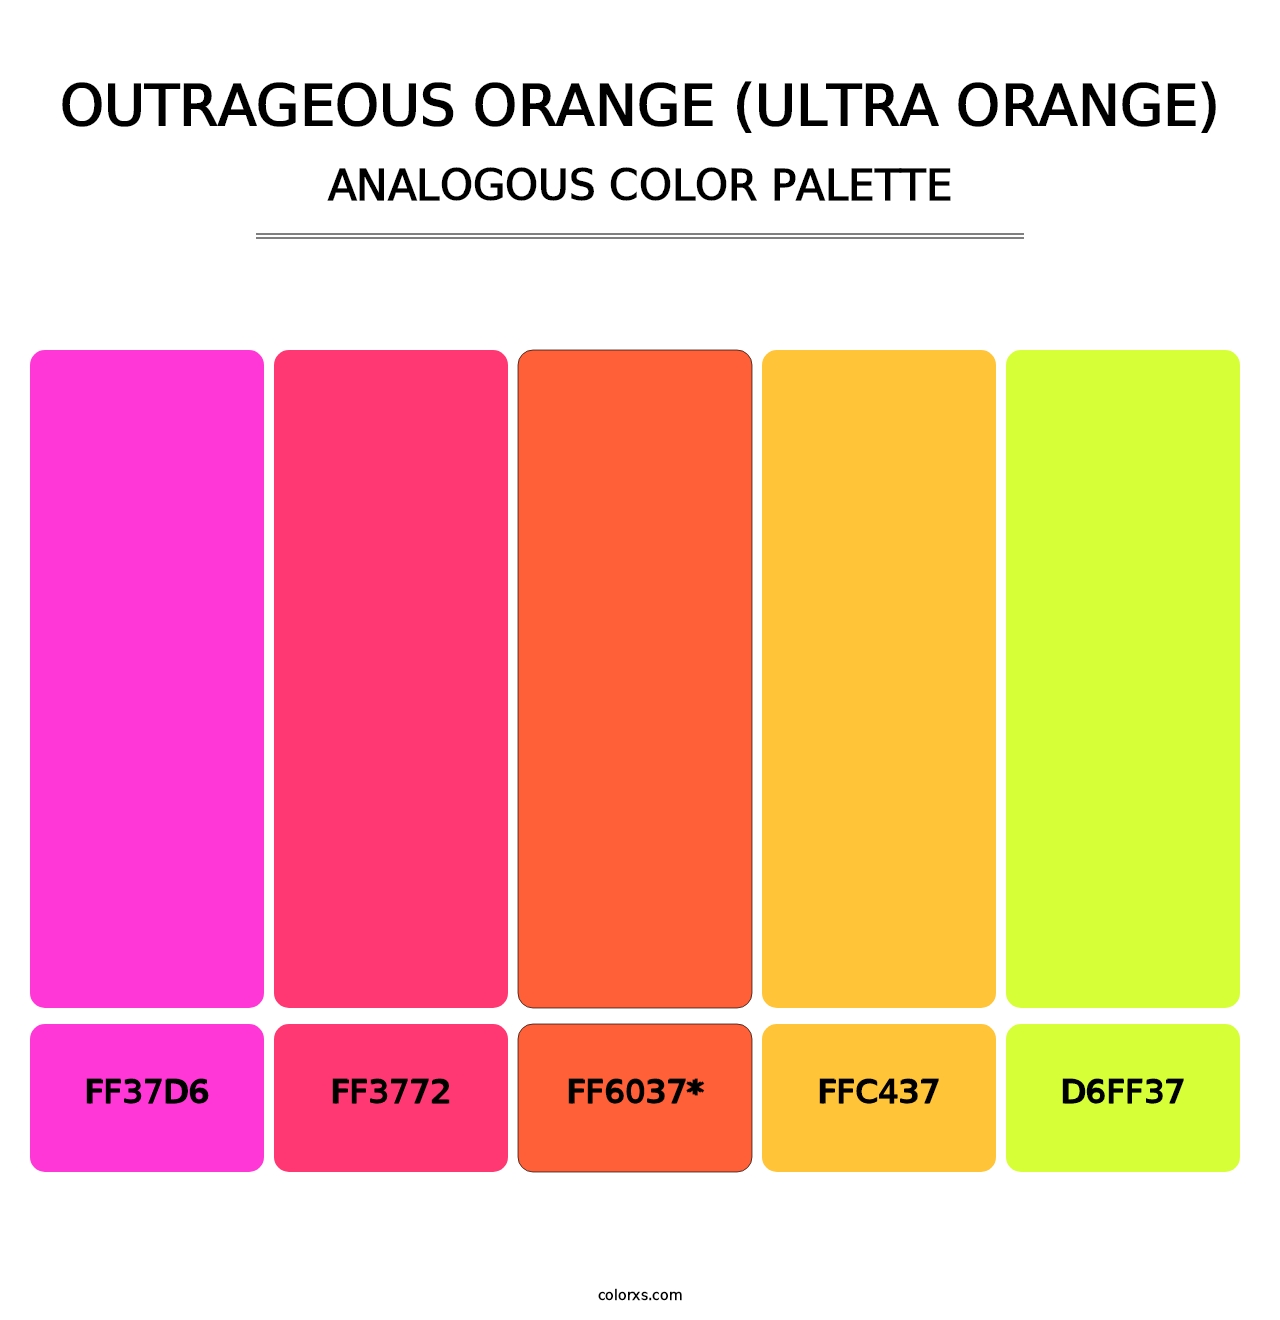 Outrageous Orange (Ultra Orange) - Analogous Color Palette